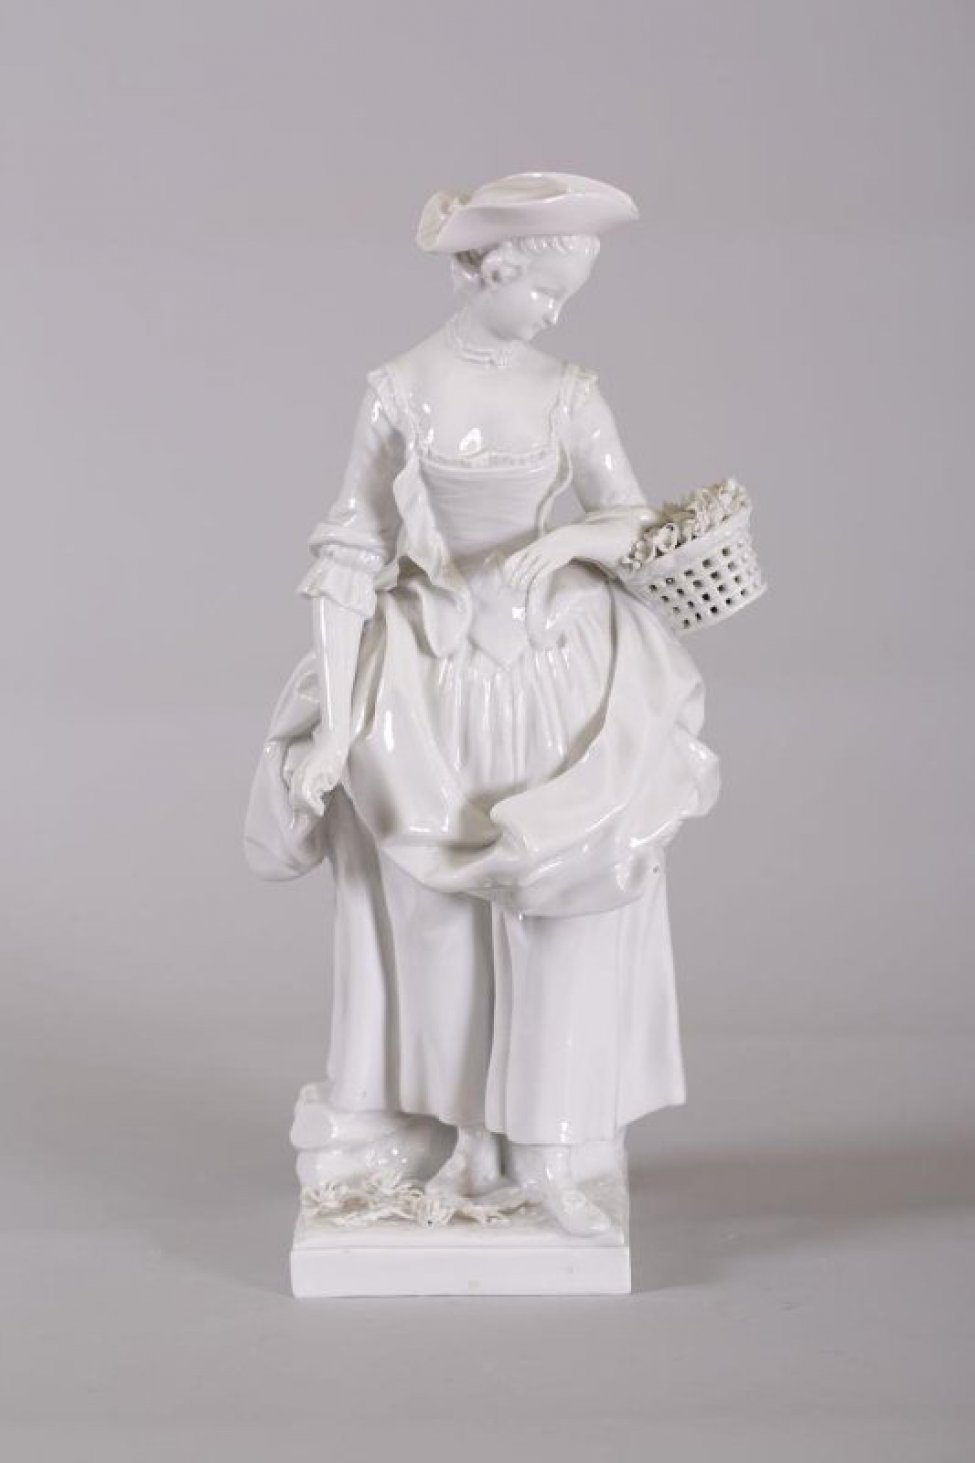 Изображена женщина в костюме 18 века, в треугольной шляпес поднятыми полями. На левой руке- корзинка с лепными  цветами, в опущенной вниз правой- цвеок. На постаменте- лепные цветы.